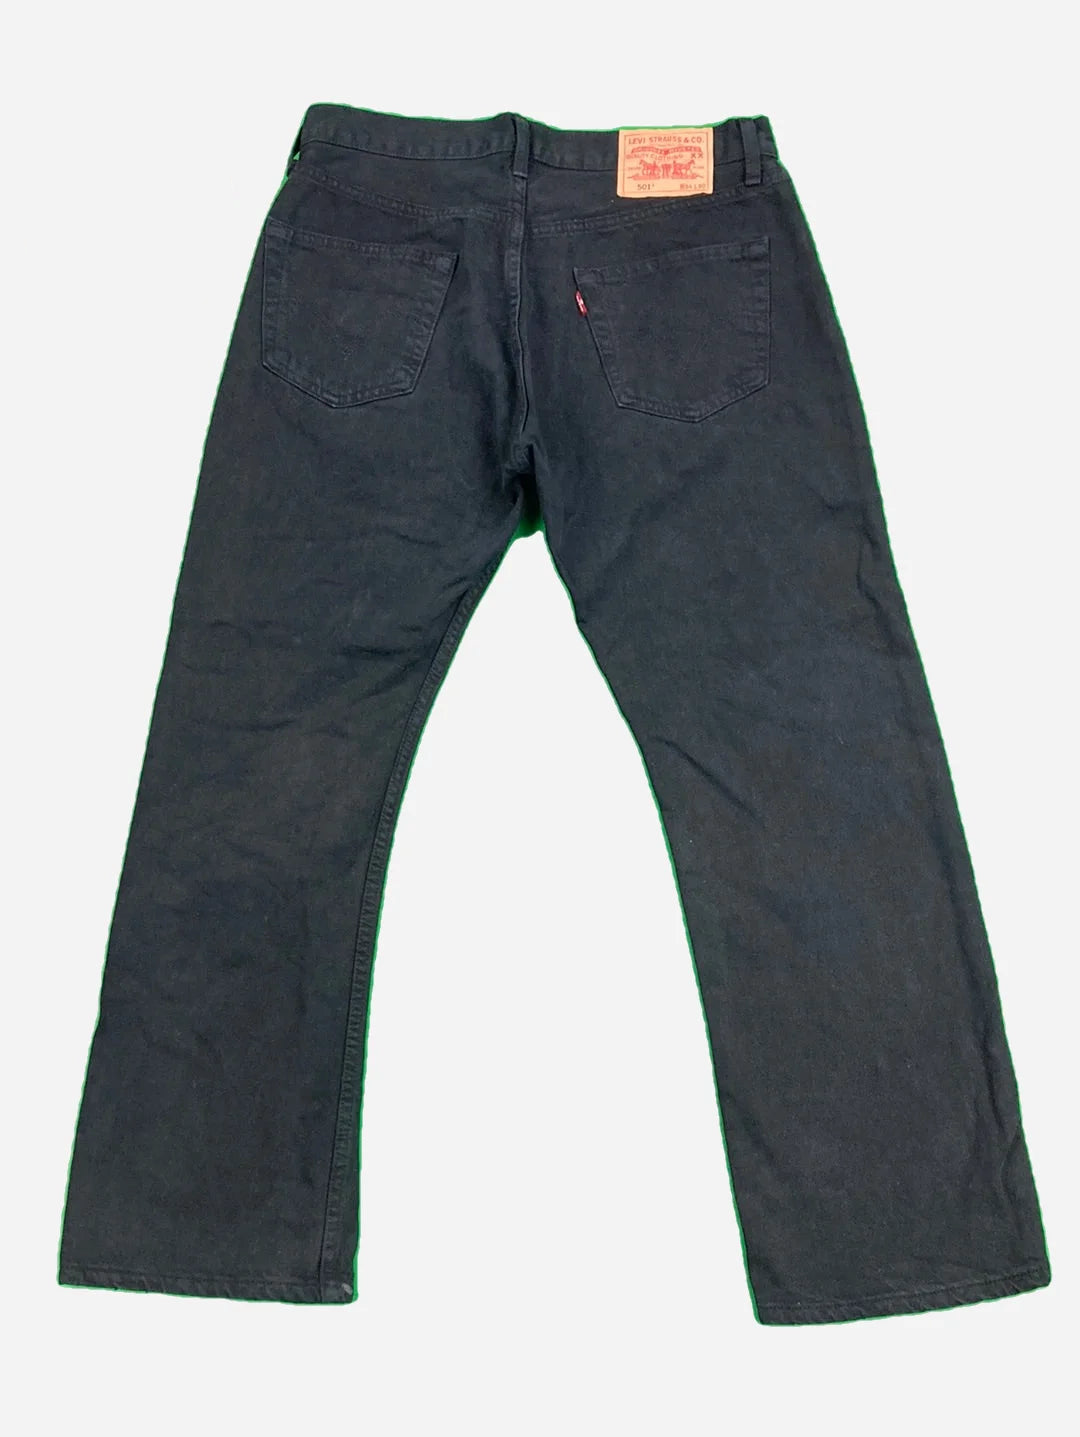 Levi’s 501 Jeans 34/30 (M)